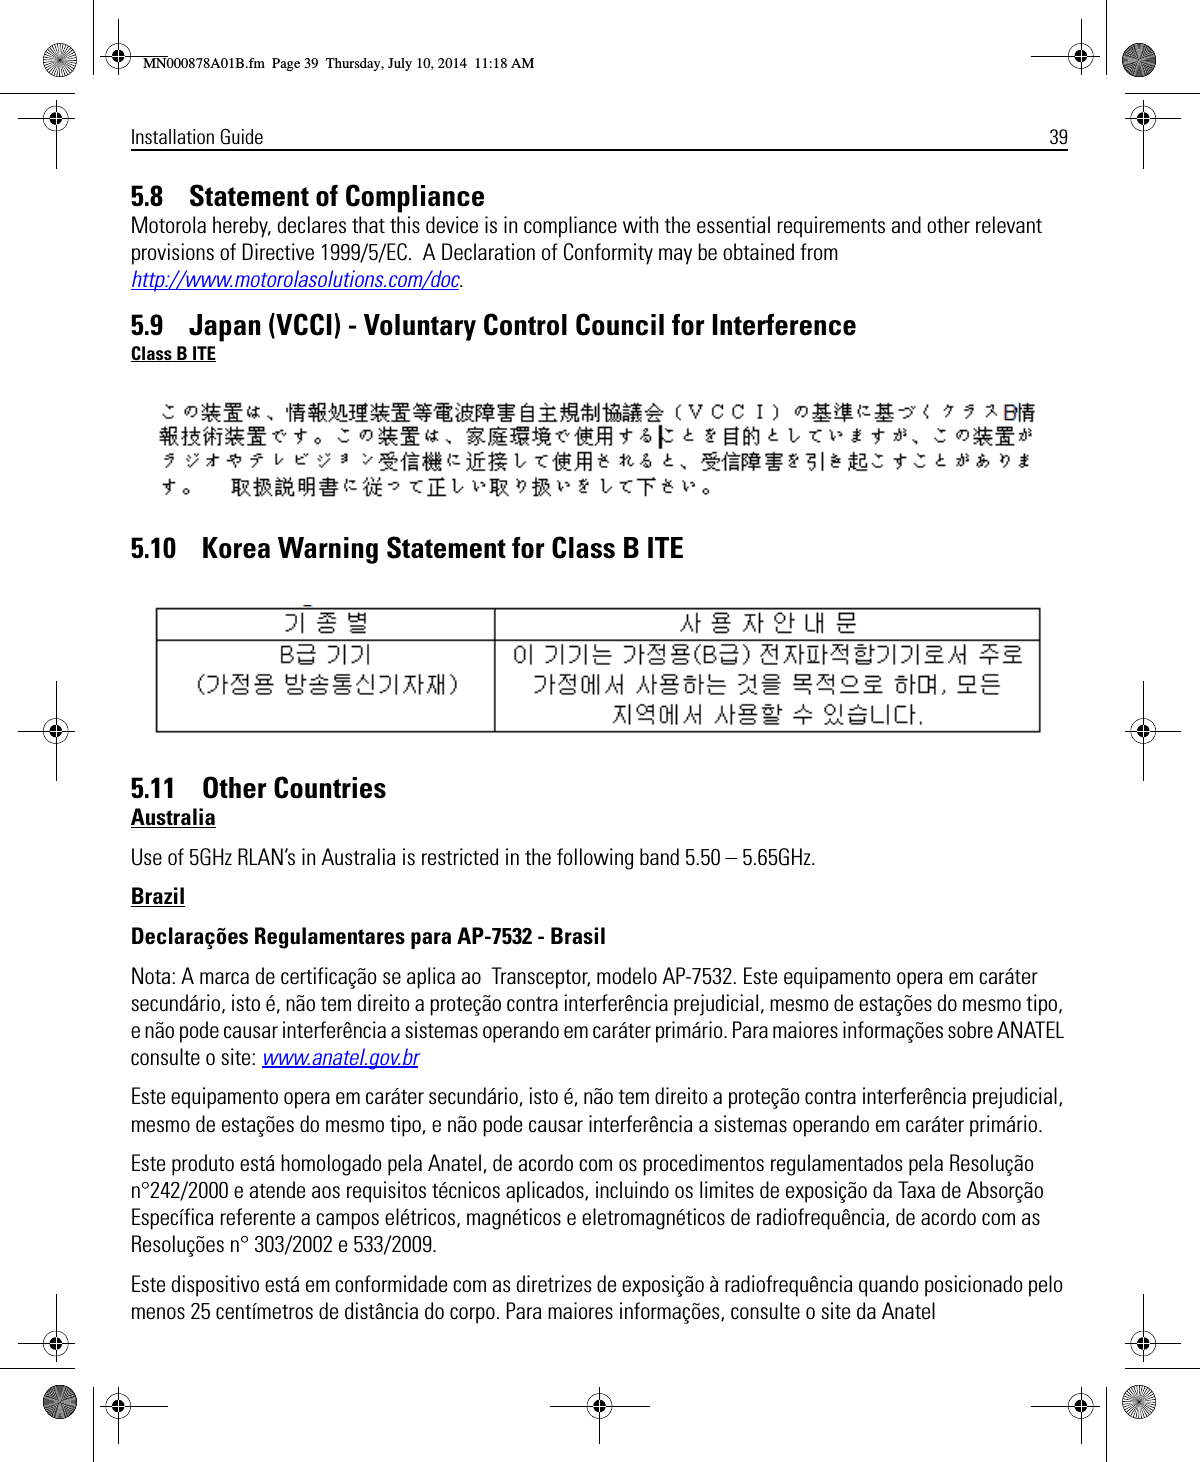 Installation Guide 395.8    Statement of ComplianceMotorola hereby, declares that this device is in compliance with the essential requirements and other relevant provisions of Directive 1999/5/EC.  A Declaration of Conformity may be obtained from http://www.motorolasolutions.com/doc.5.9    Japan (VCCI) - Voluntary Control Council for InterferenceClass B ITE5.10    Korea Warning Statement for Class B ITE5.11    Other CountriesAustraliaUse of 5GHz RLAN’s in Australia is restricted in the following band 5.50 – 5.65GHz.BrazilDeclarações Regulamentares para AP-7532 - BrasilNota: A marca de certificação se aplica ao  Transceptor, modelo AP-7532. Este equipamento opera em caráter secundário, isto é, não tem direito a proteção contra interferência prejudicial, mesmo de estações do mesmo tipo, e não pode causar interferência a sistemas operando em caráter primário. Para maiores informações sobre ANATEL consulte o site: www.anatel.gov.brEste equipamento opera em caráter secundário, isto é, não tem direito a proteção contra interferência prejudicial, mesmo de estações do mesmo tipo, e não pode causar interferência a sistemas operando em caráter primário.Este produto está homologado pela Anatel, de acordo com os procedimentos regulamentados pela Resolução n°242/2000 e atende aos requisitos técnicos aplicados, incluindo os limites de exposição da Taxa de Absorção Específica referente a campos elétricos, magnéticos e eletromagnéticos de radiofrequência, de acordo com as  Resoluções n° 303/2002 e 533/2009.Este dispositivo está em conformidade com as diretrizes de exposição à radiofrequência quando posicionado pelo menos 25 centímetros de distância do corpo. Para maiores informações, consulte o site da AnatelMN000878A01B.fm  Page 39  Thursday, July 10, 2014  11:18 AM